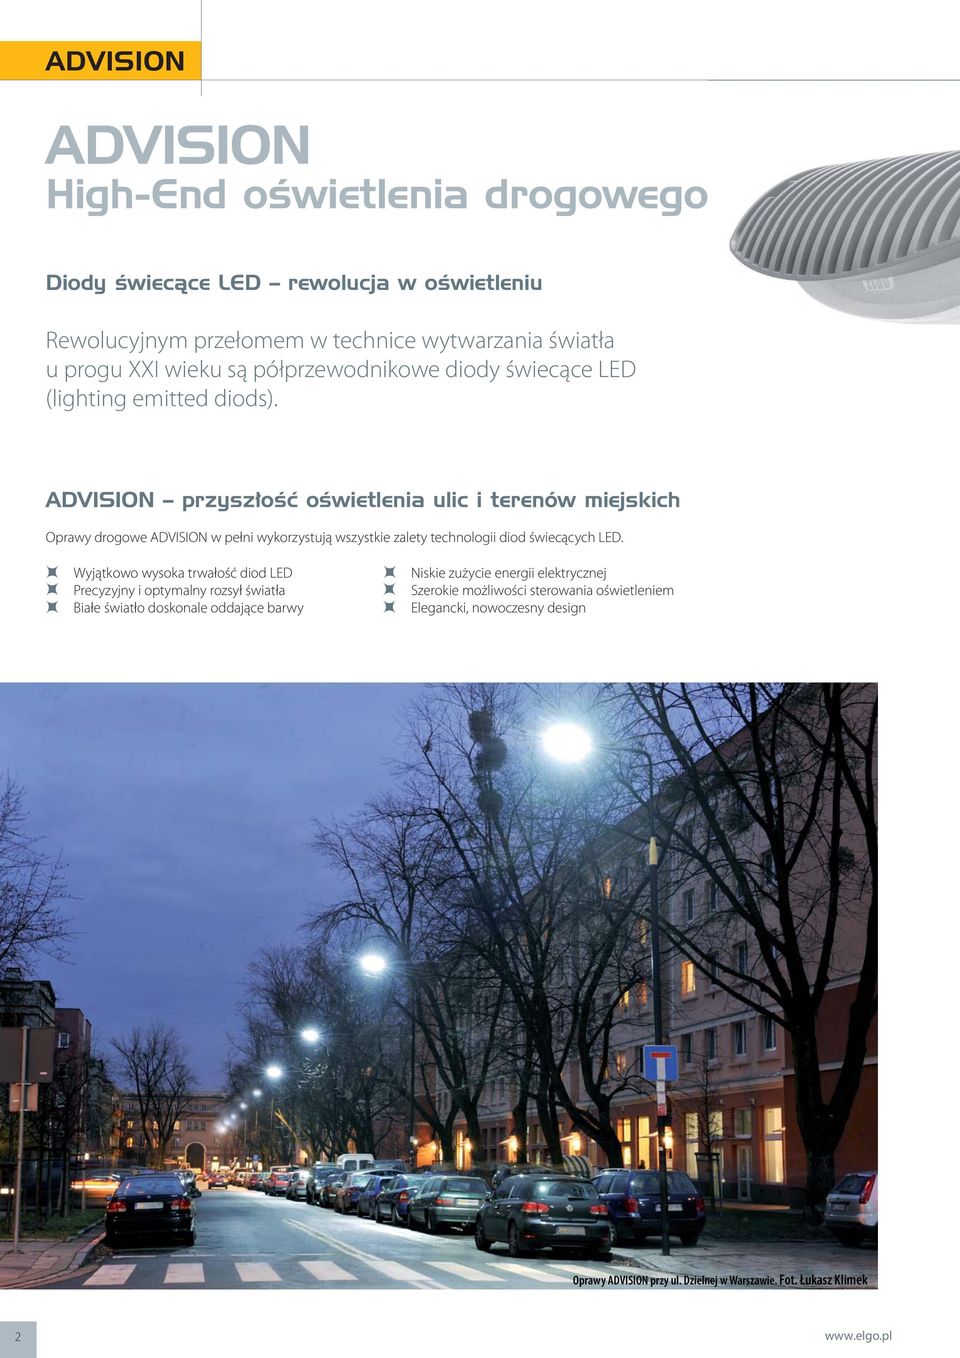 ADVISION przyszłość oświetlenia ulic i terenów miejskich Oprawy drogowe ADVISION w pełni wykorzystują wszystkie zalety technologii diod świecących LED.